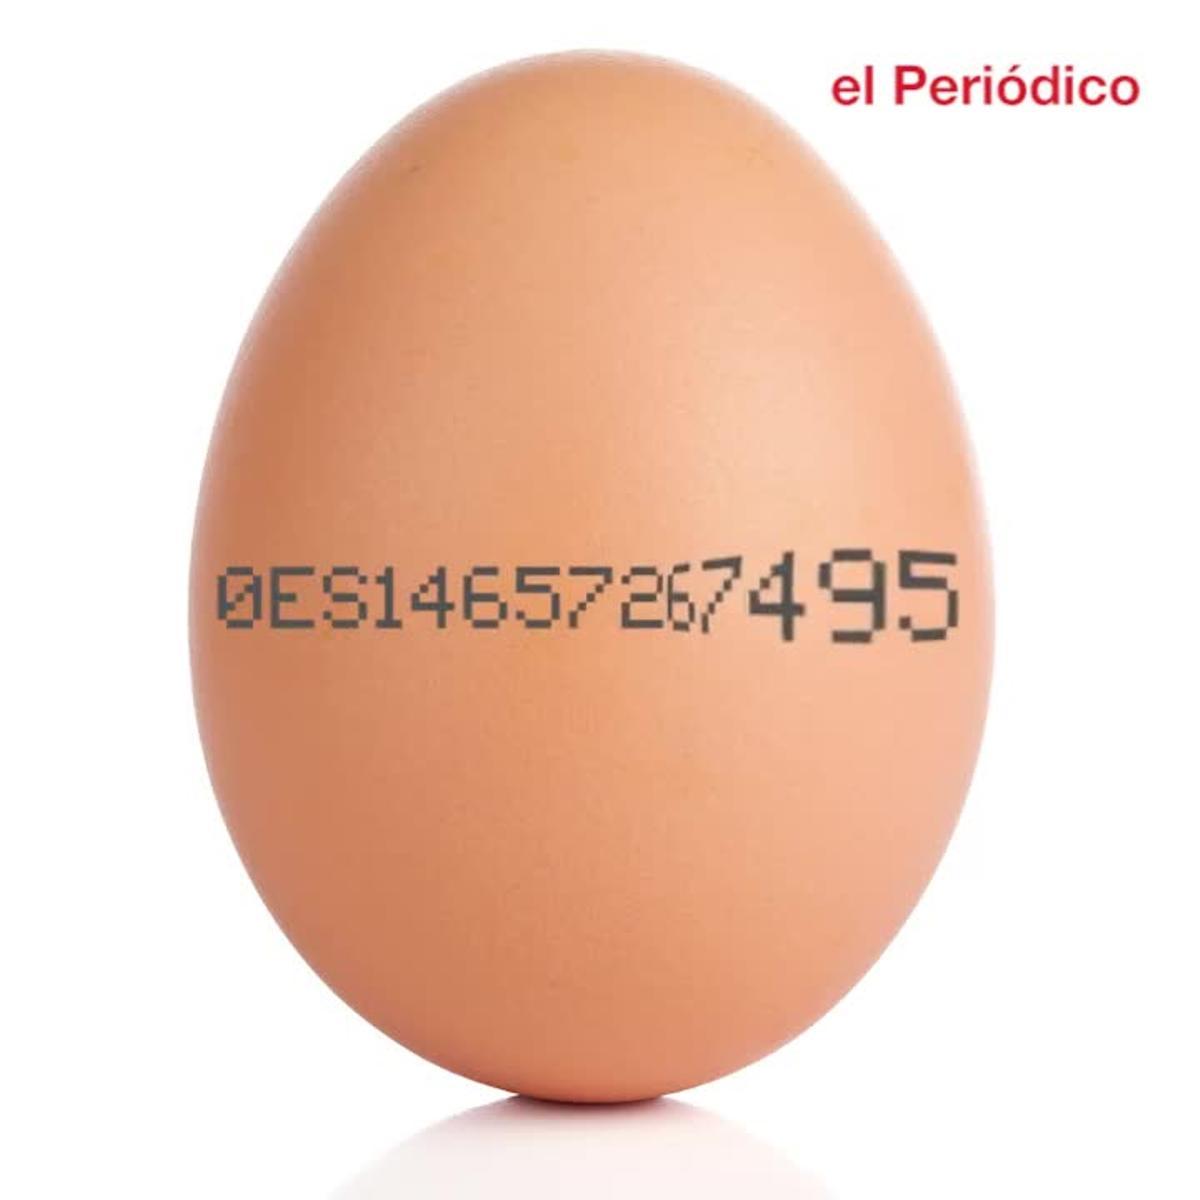 Com interpretar el codi de números i lletres que tenen els ous.